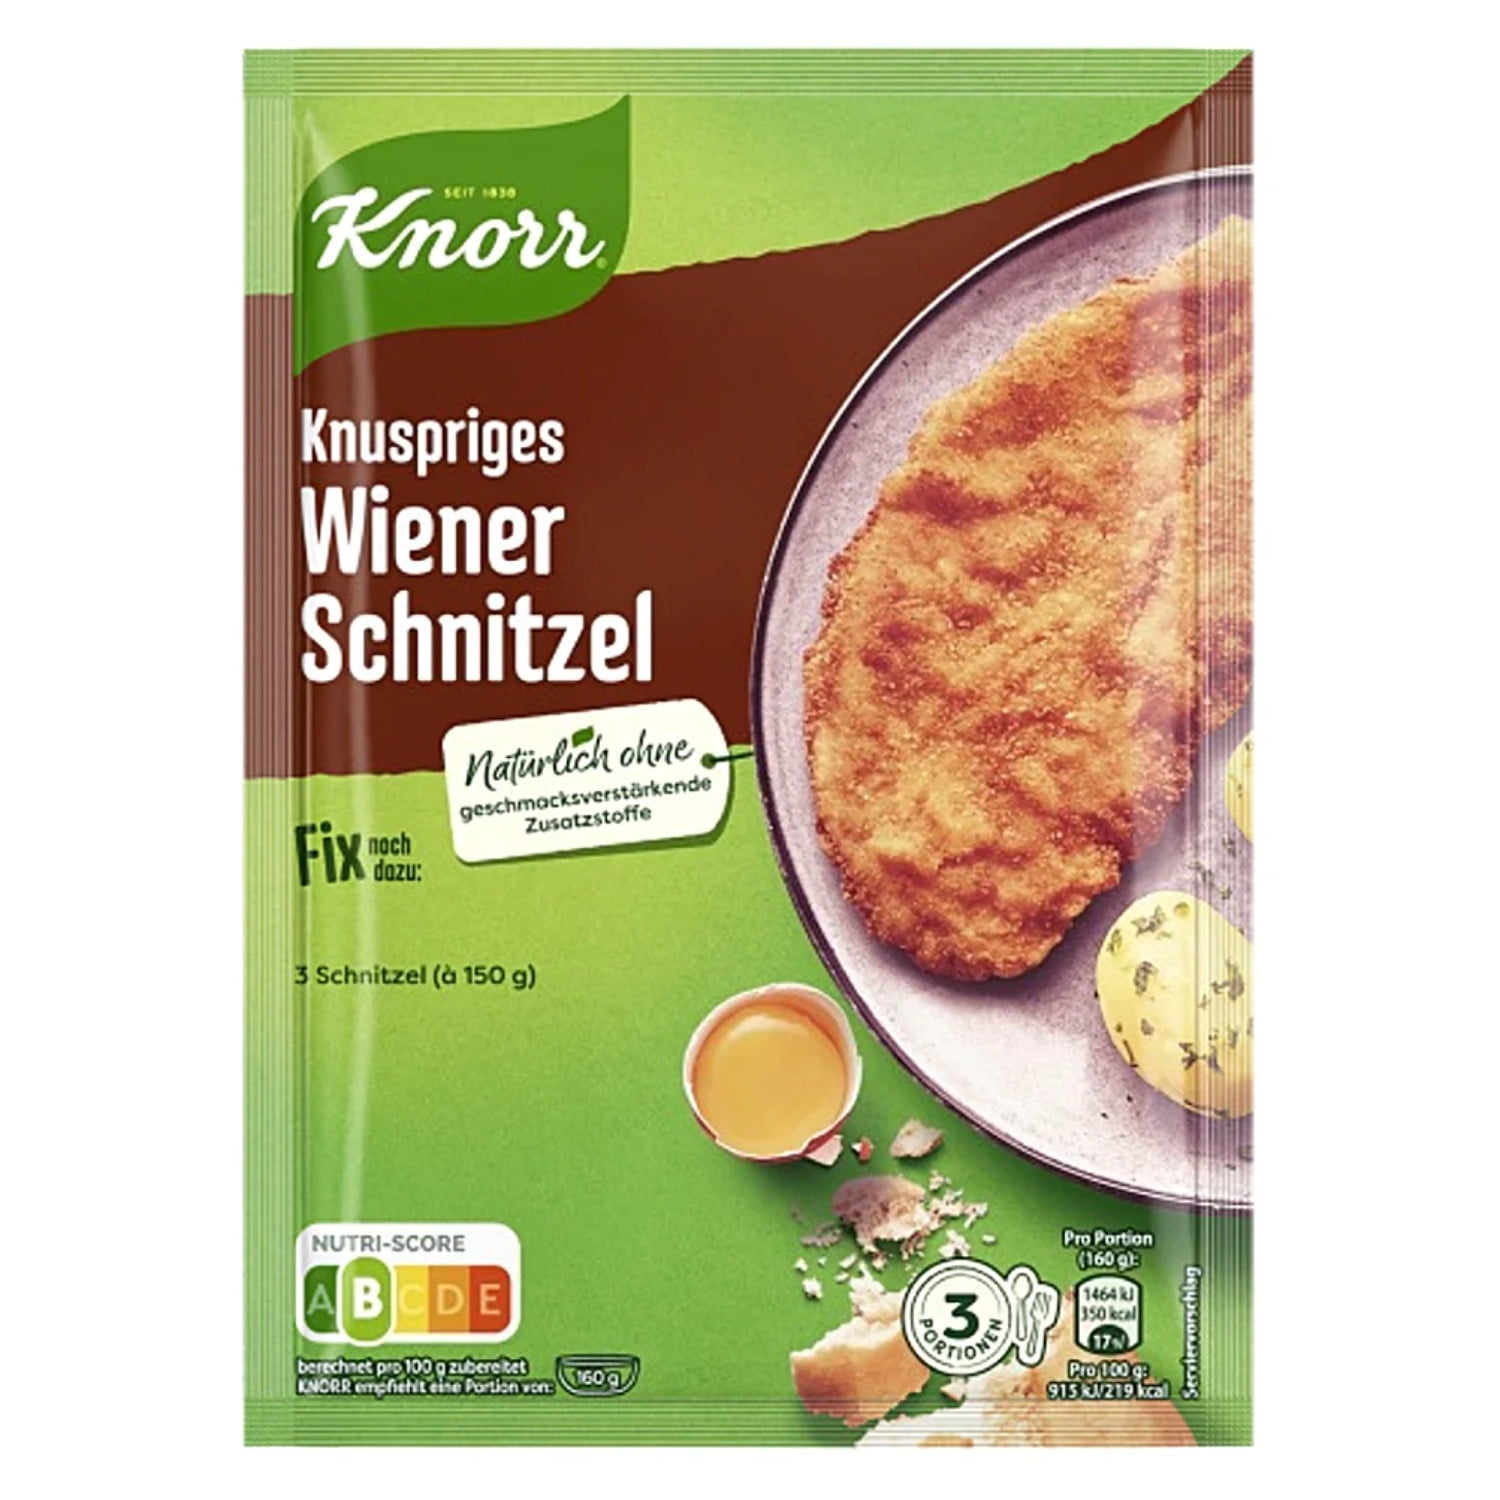 For Fix Knorr pack Wiener Schnitzel - 1